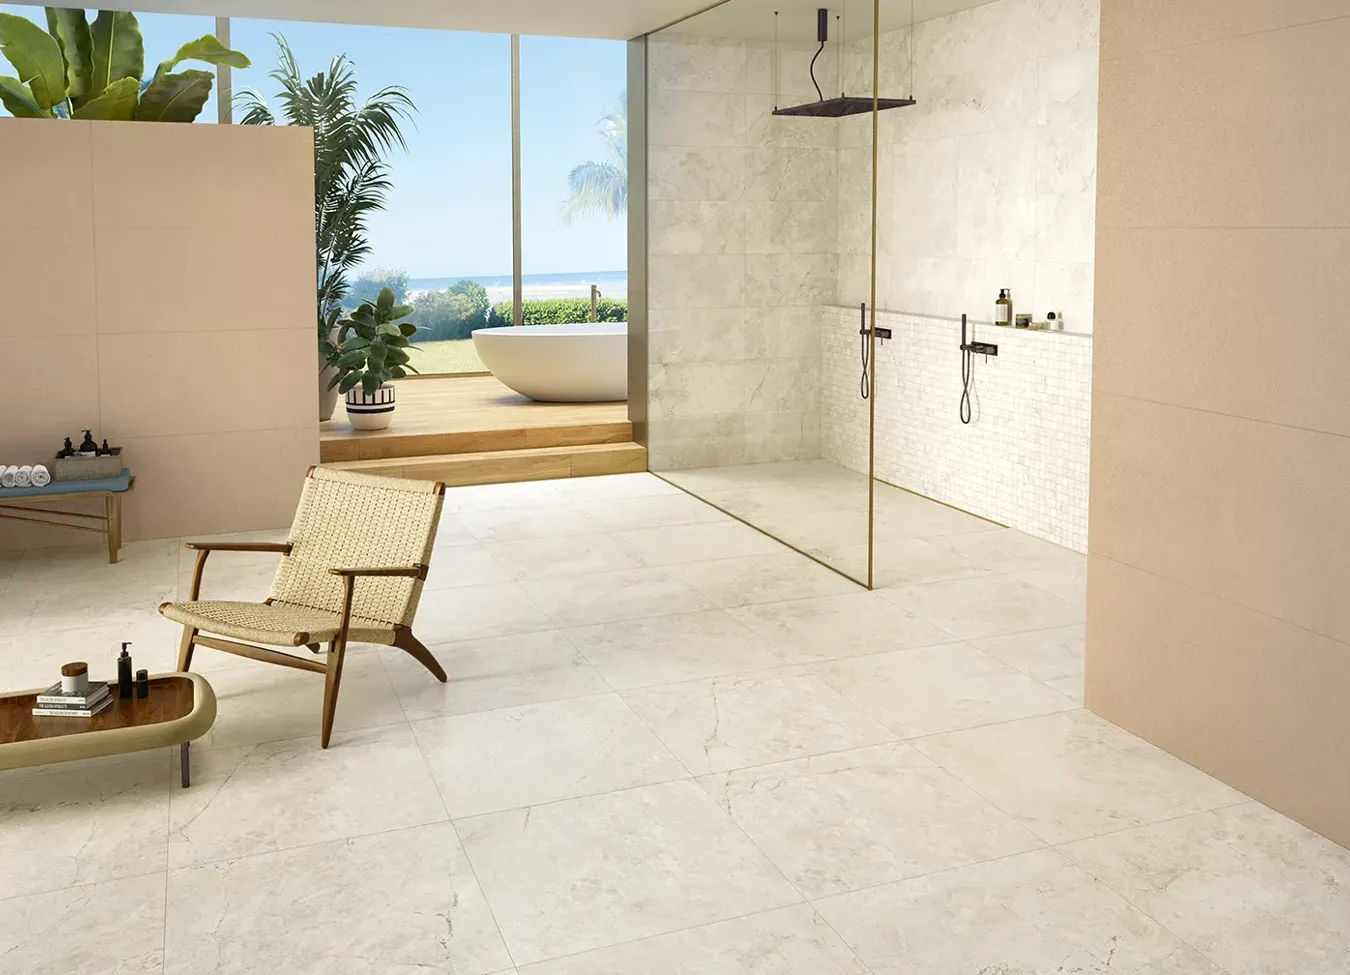 Offenes Badezimmer mit einer Duschwanne in Steinoptik aus der Omnia-Kollektion, die Innen- und Außenbereiche harmonisch verbindet.